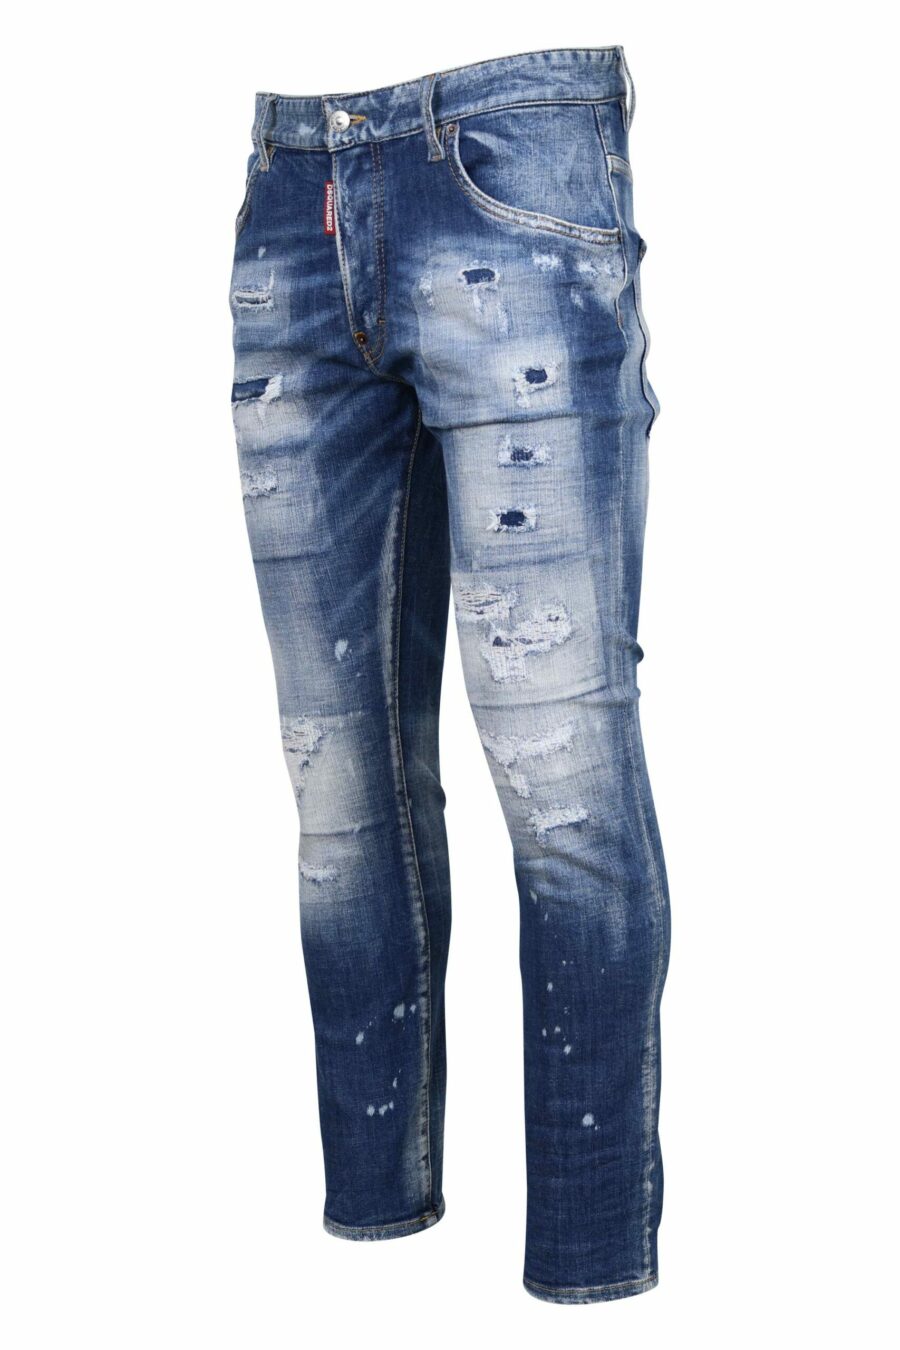 Hellblaue Jeans "Skaterjean" mit Rissen und ausgefranst - 8054148338848 1 skaliert